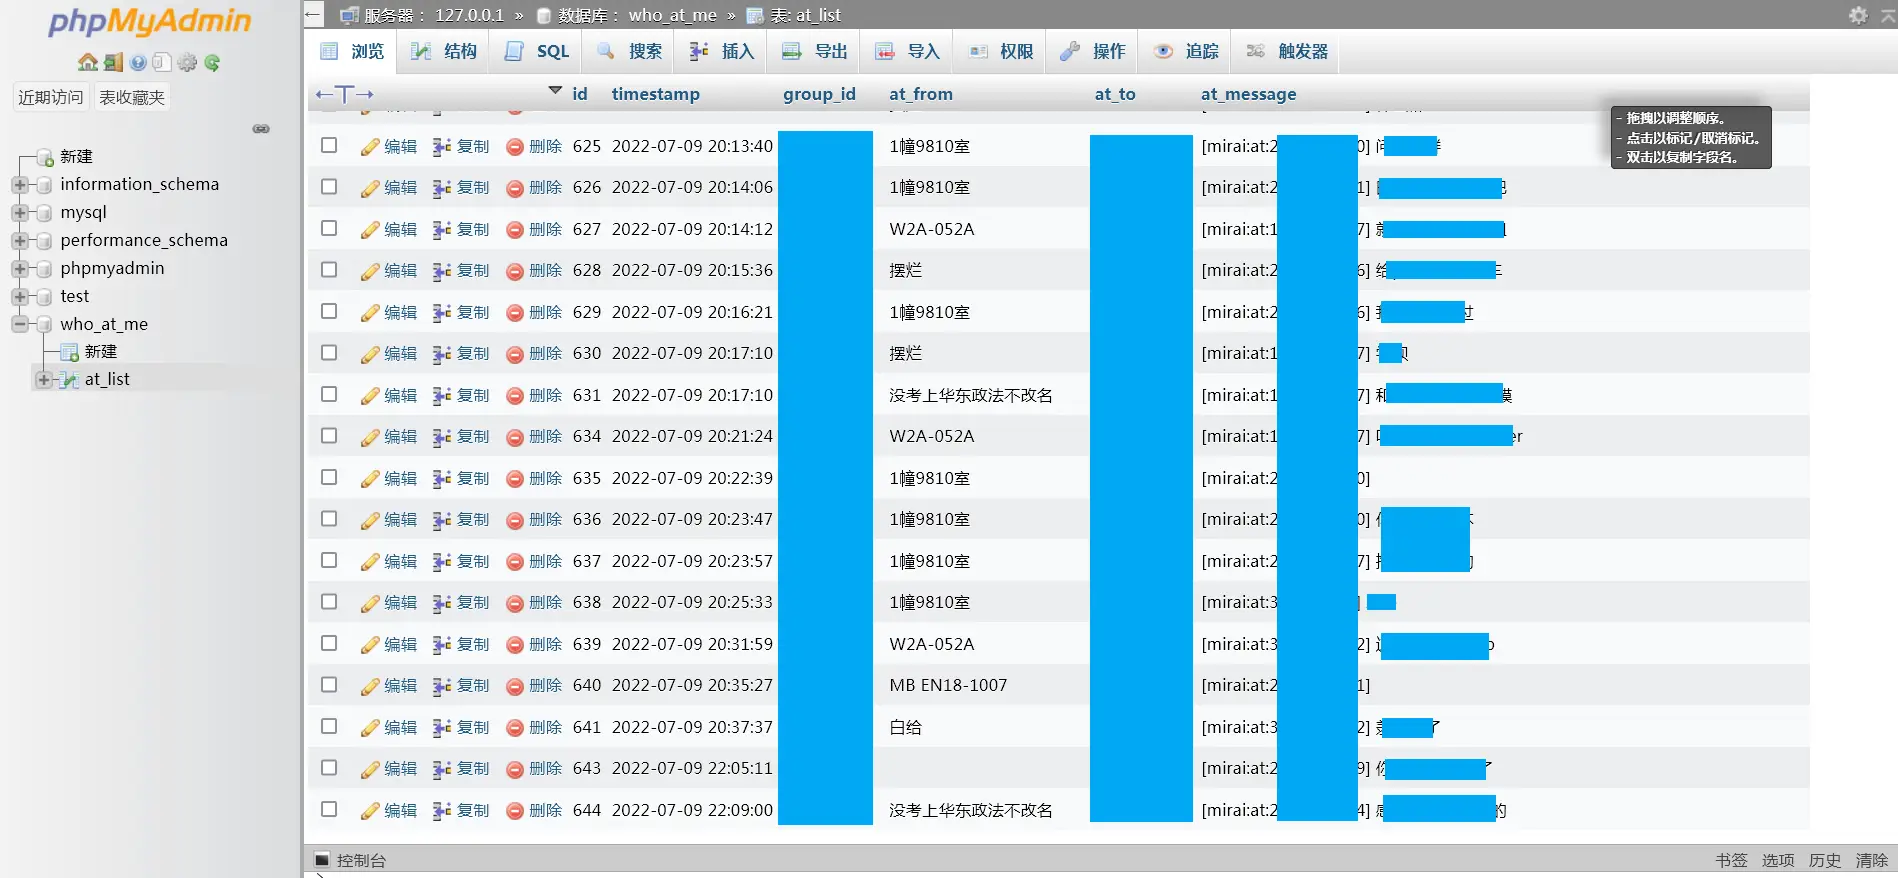 Screenshot 2022-07-09 at 22-10-02 localhost _ 127.0.0.1 _ who_at_me _ at_list phpMyAdmin 5.2.0.png